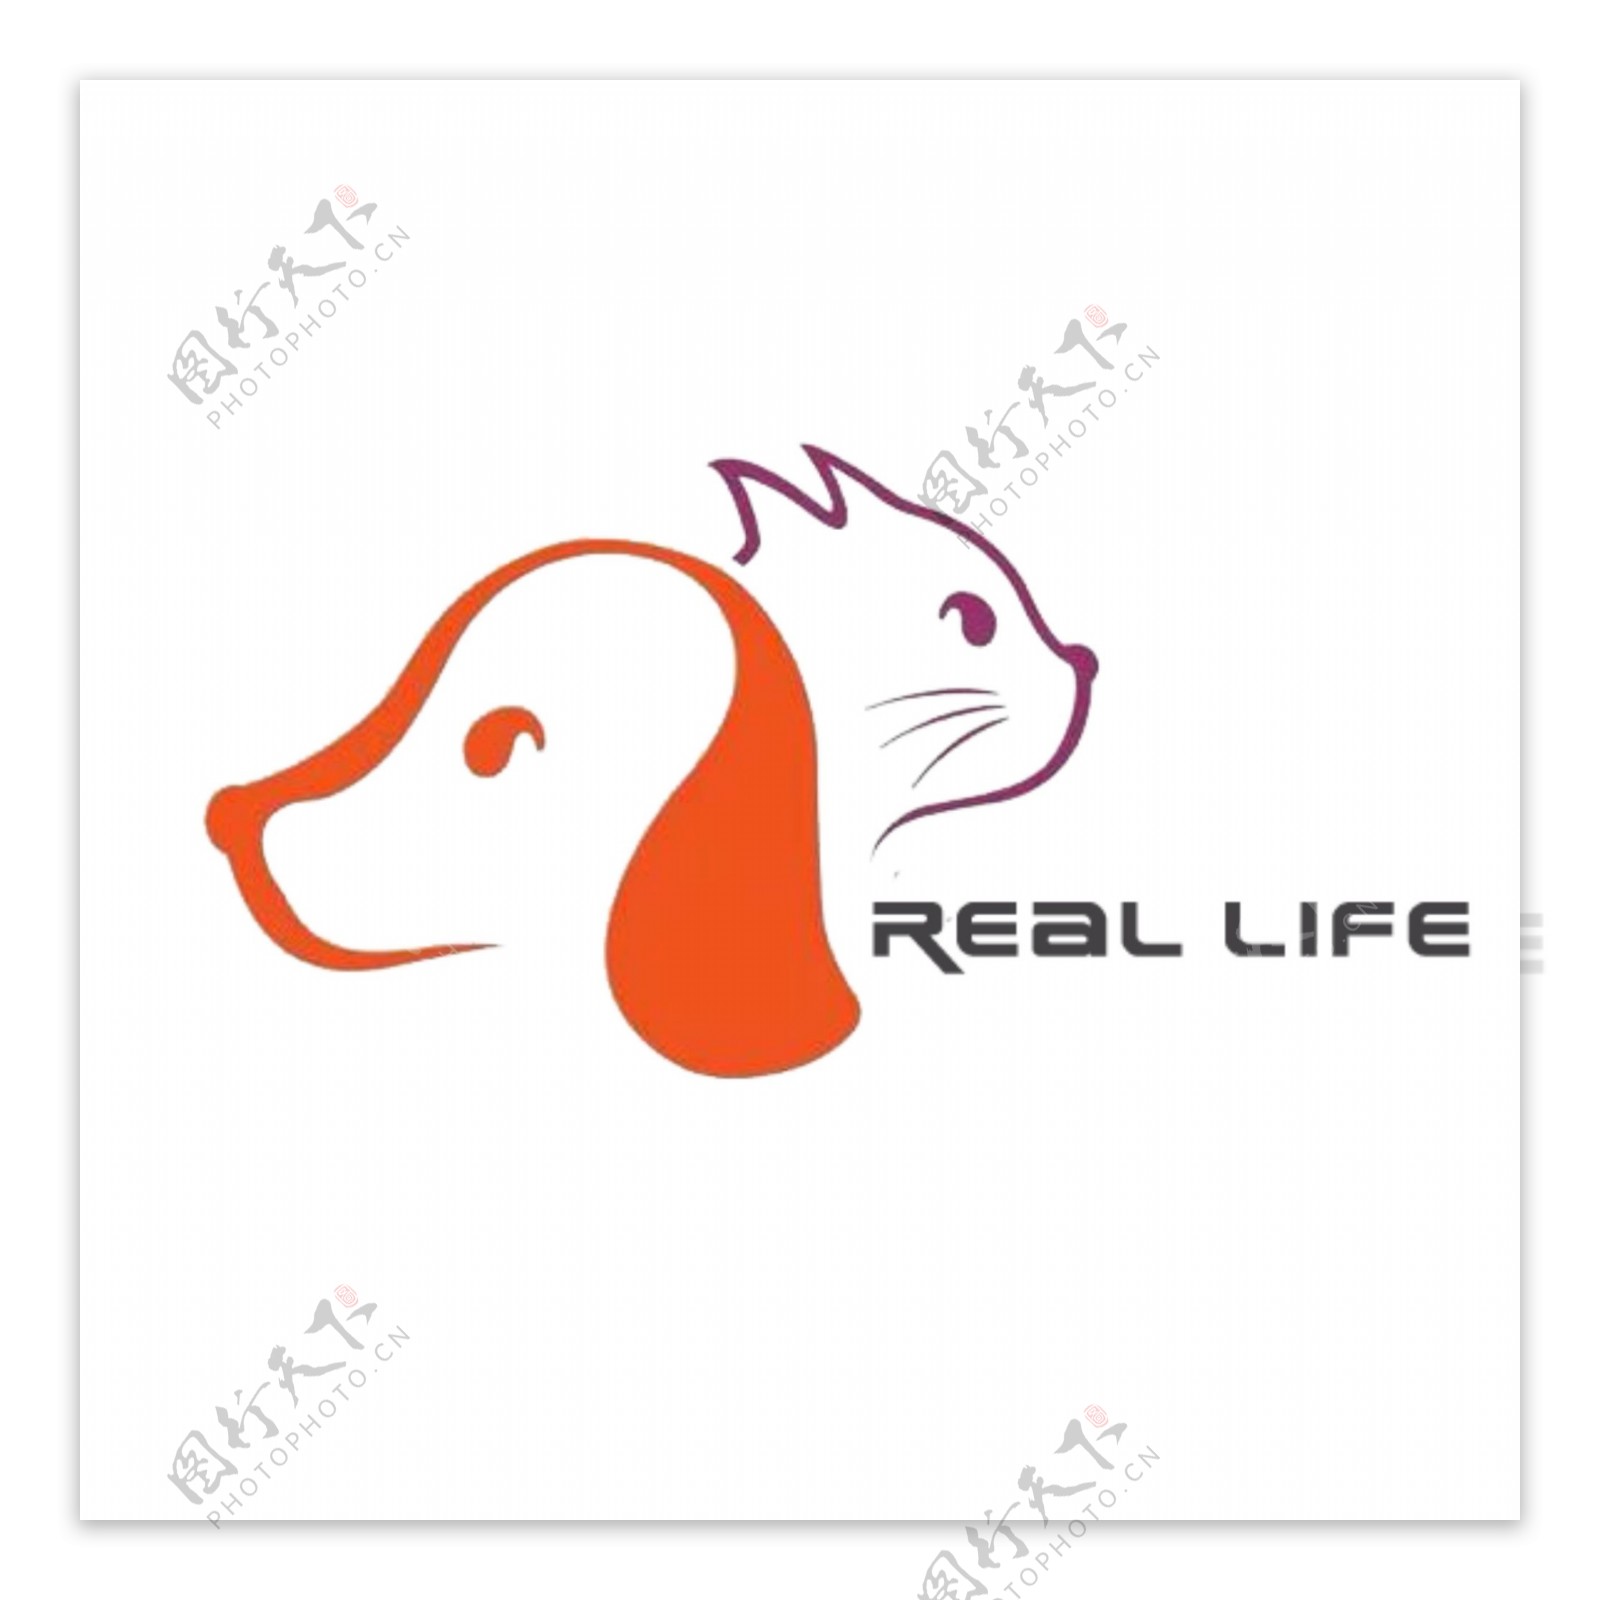 宠物店品牌logo设计